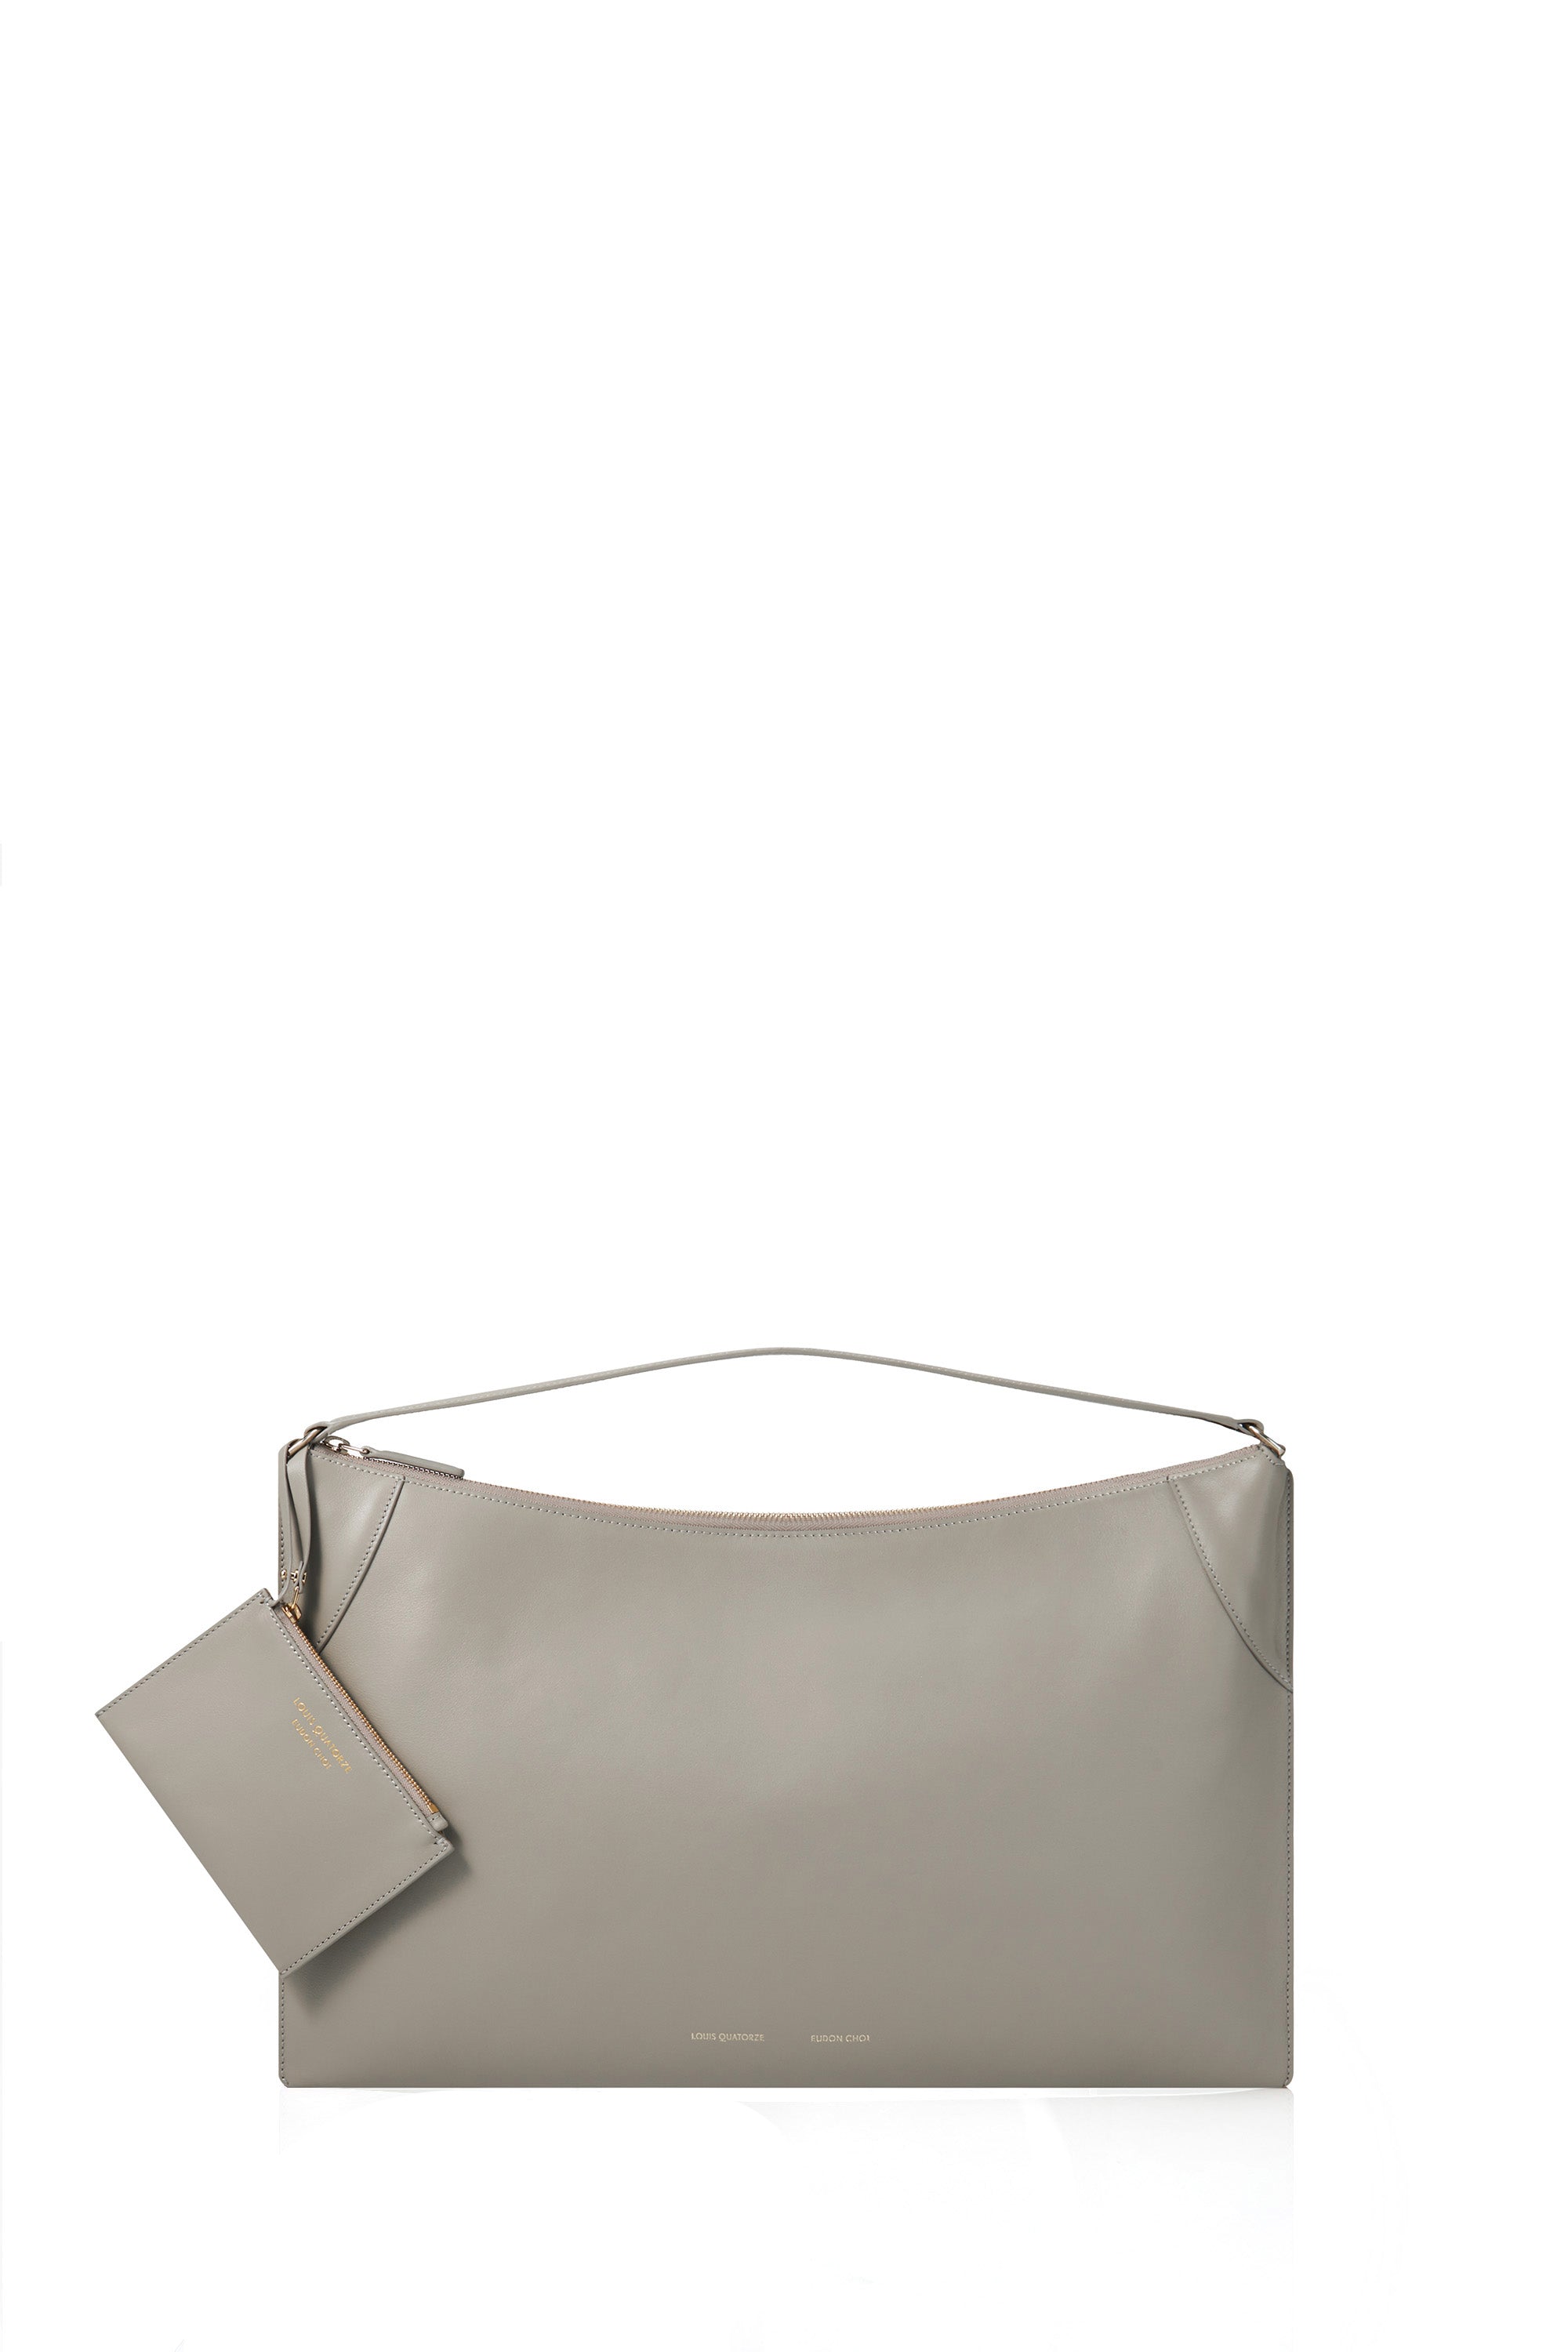 RENATA Shoulder Bag (EUDON CHOI Collection) – LOUIS QUATORZE